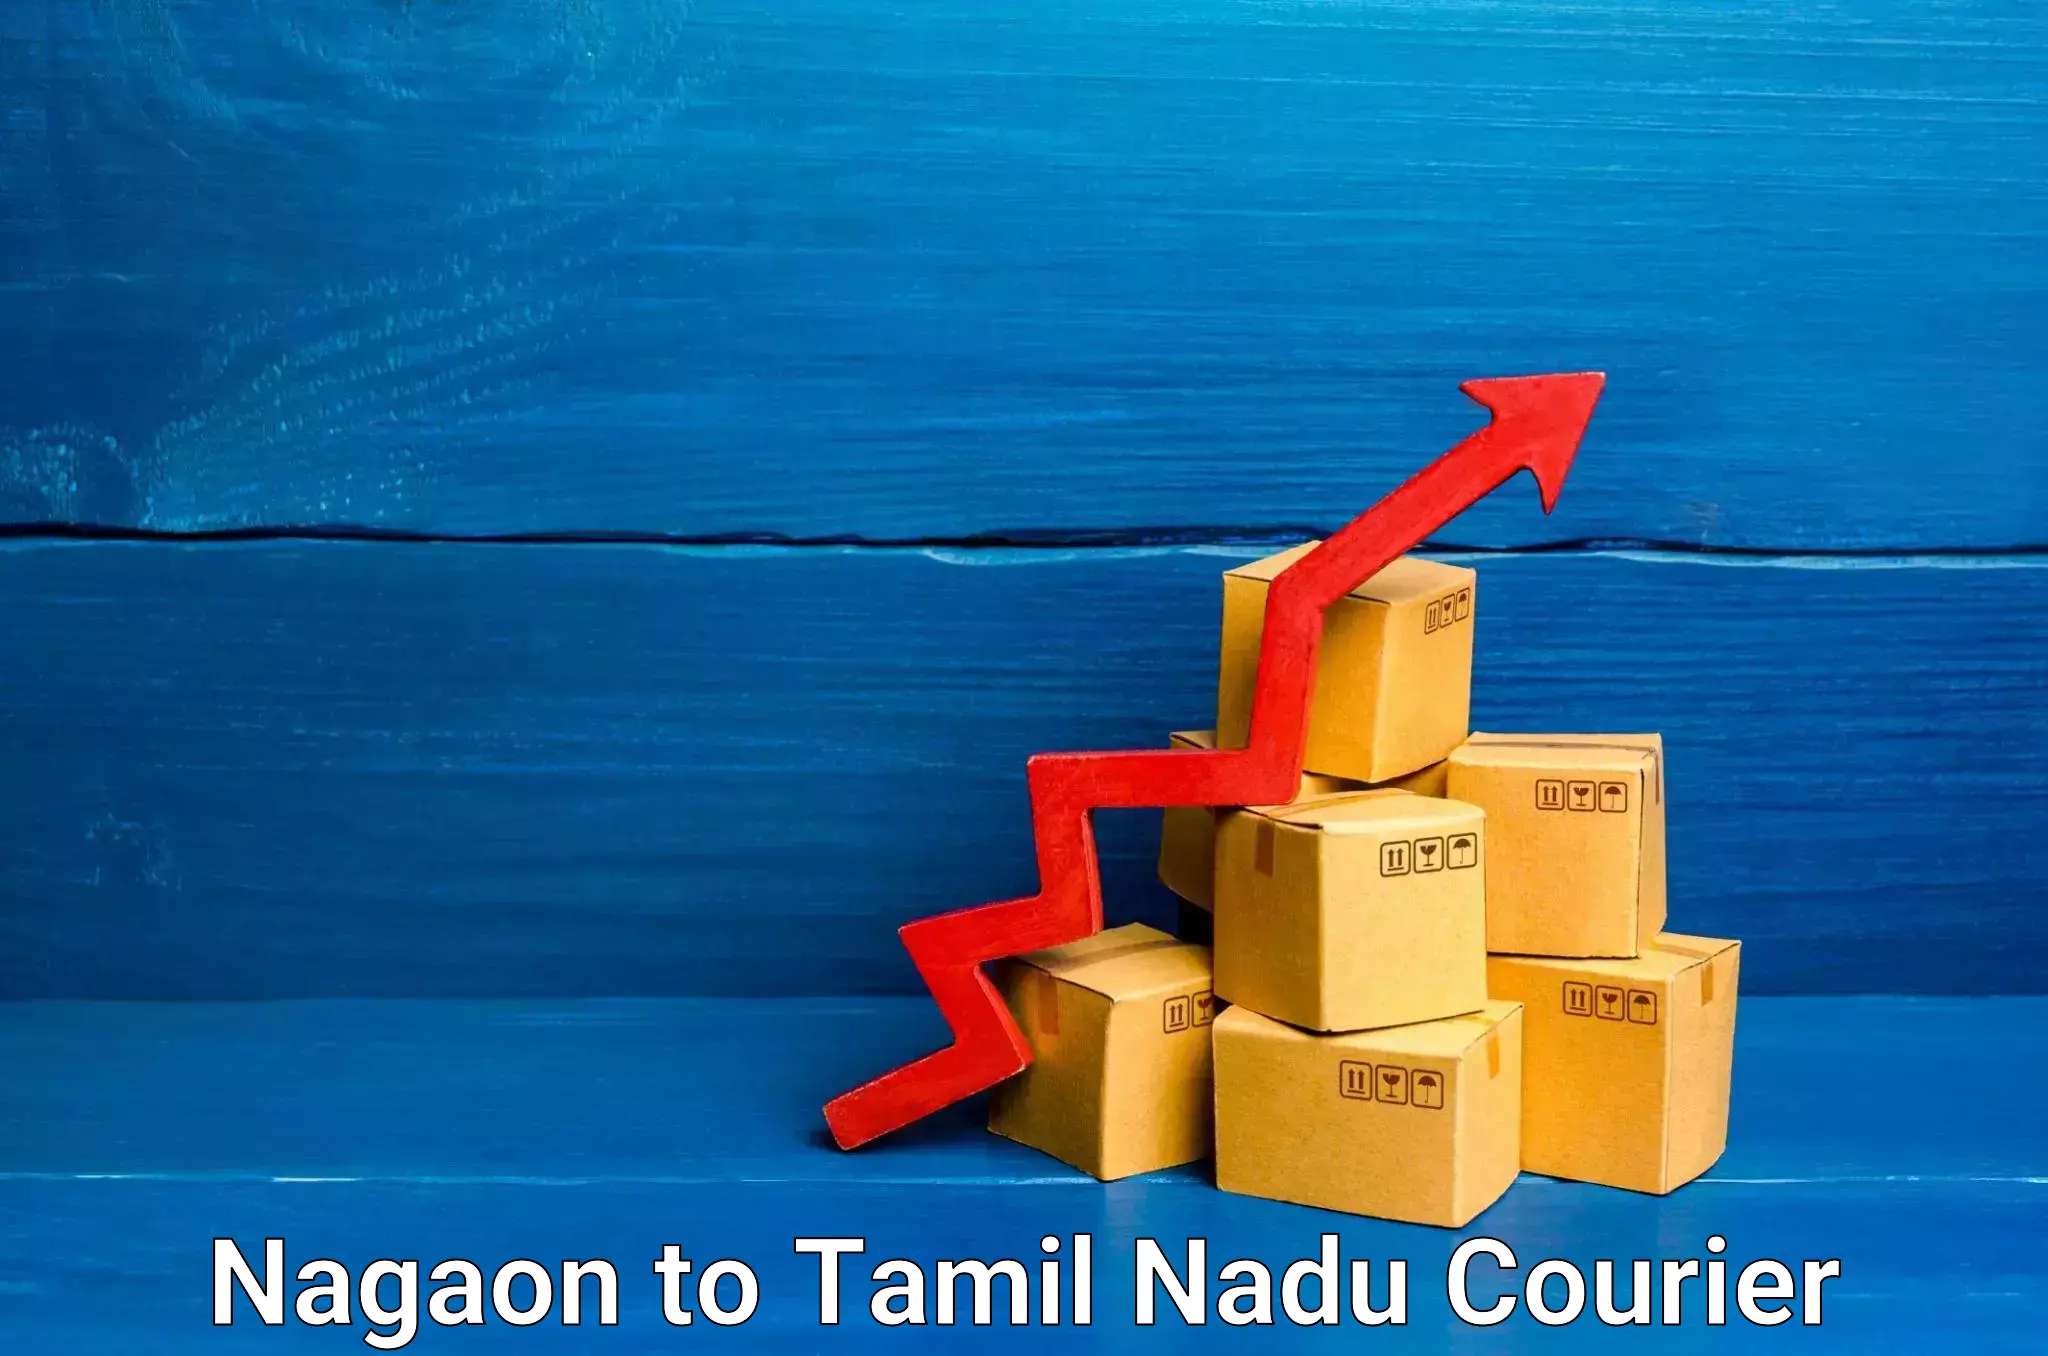 Global delivery options Nagaon to Tirunelveli